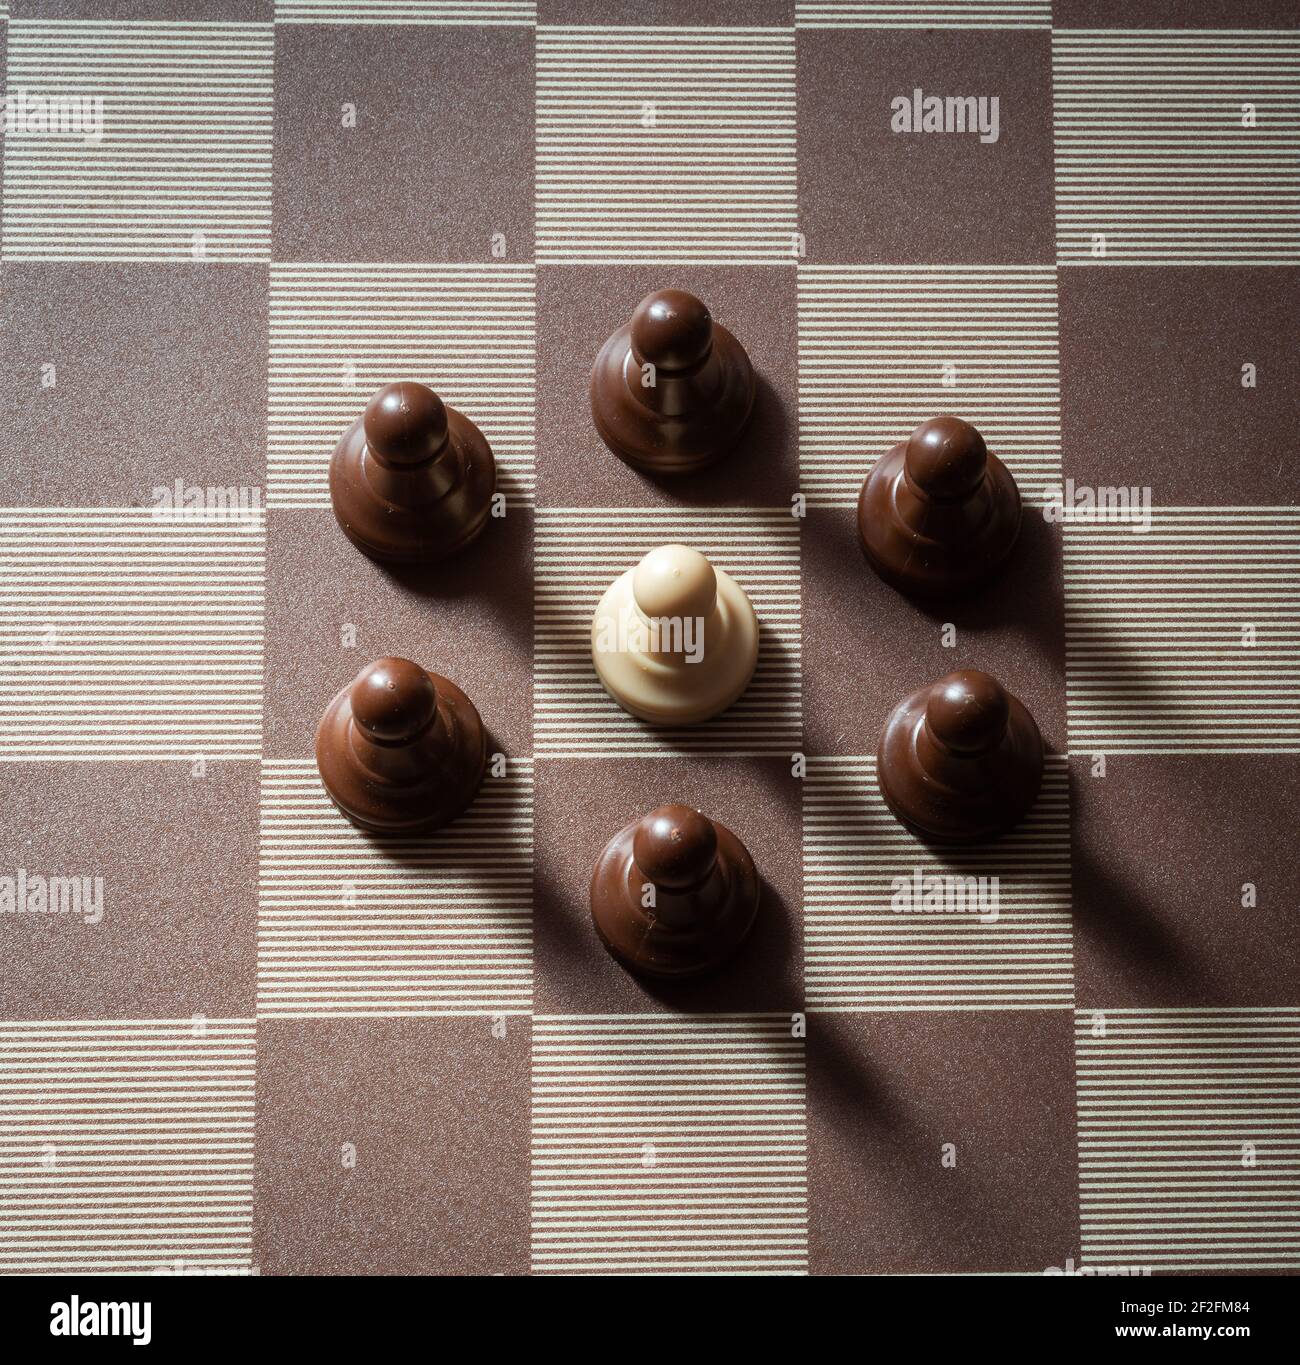 pawn sulla scacchiera circondata dal concetto avversario di avversità, discernimento, uguaglianza. Foto Stock